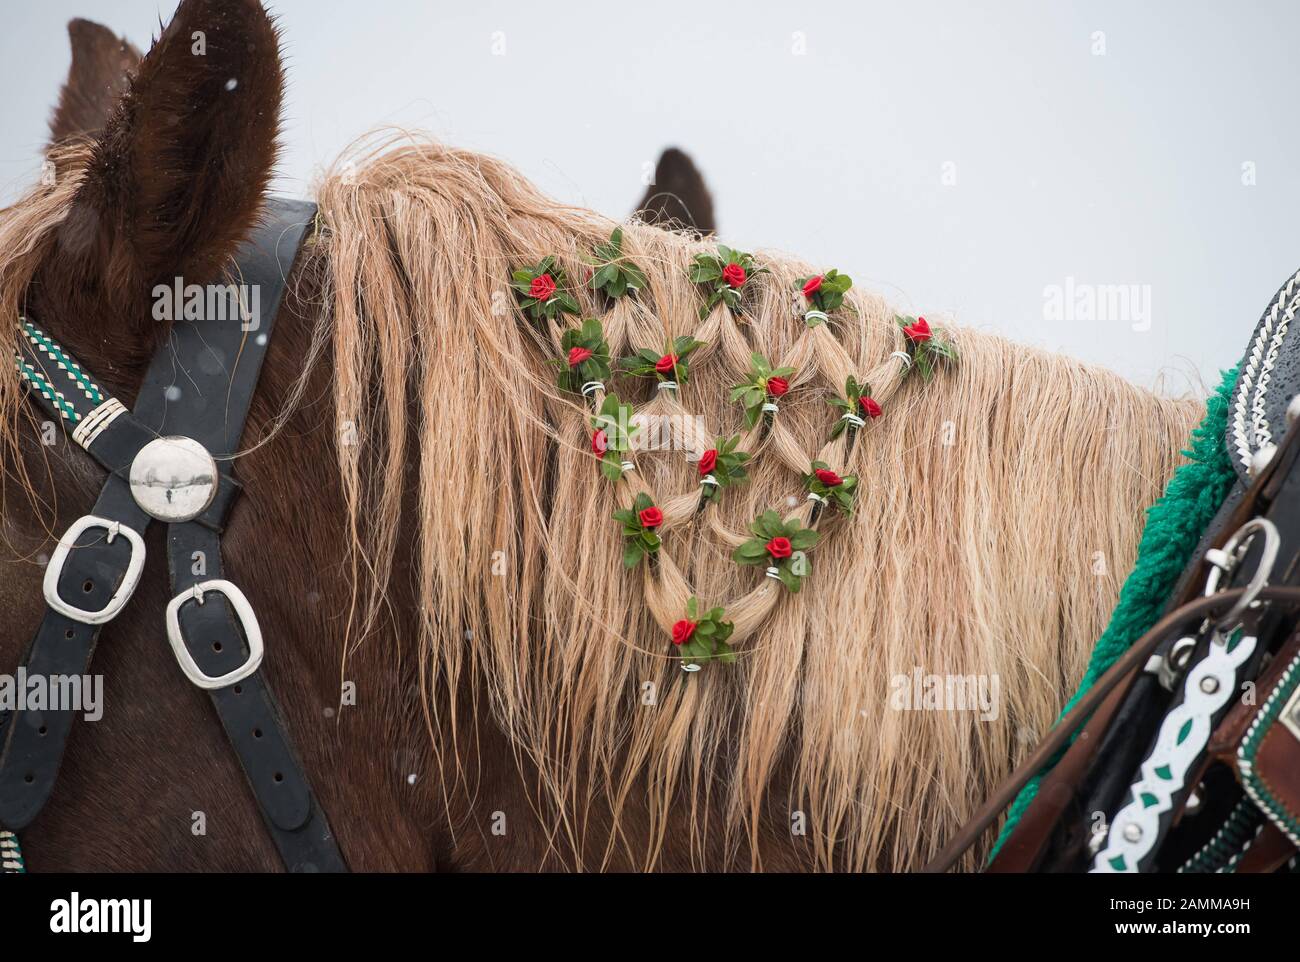 Paseo Leonhardi, Bad Tölz, 07.11.2016: Un caballo decorado festivamente toma parte en el tradicional paseo Leonhardi en Bad Tölz. [traducción automática] Foto de stock